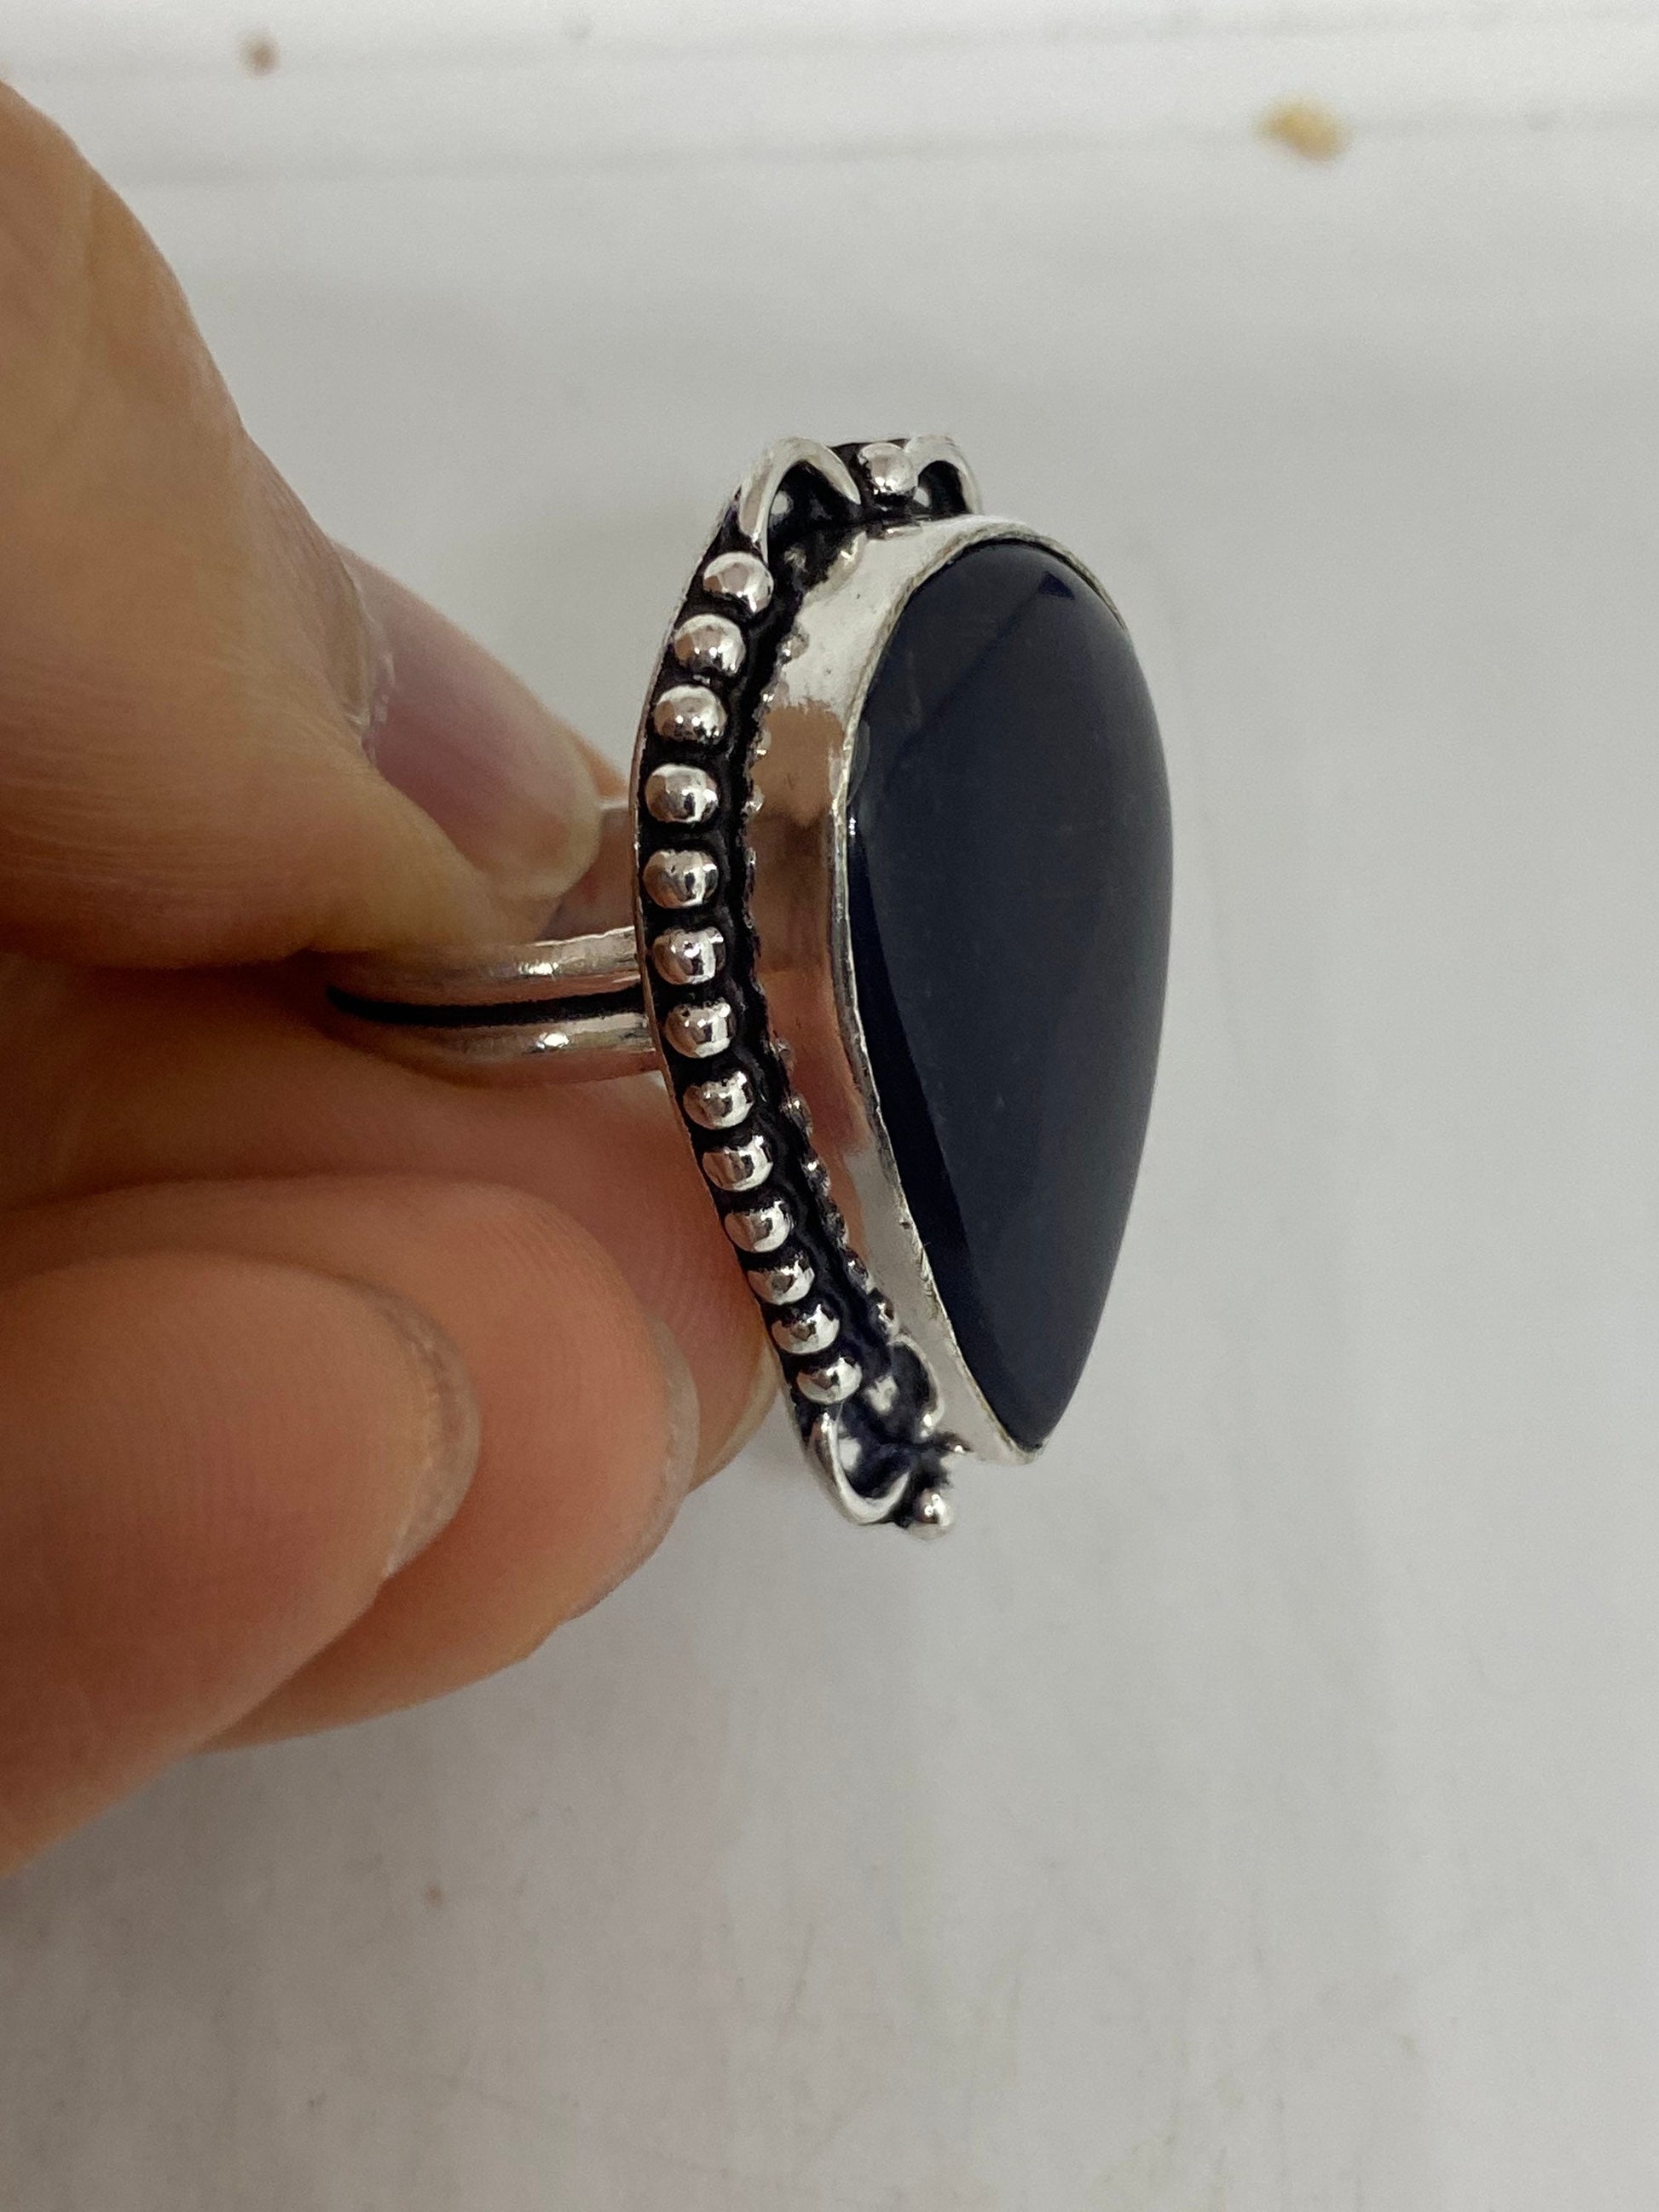 Vintage Black Obsidian Silver Cocktail Ring Size 7.5